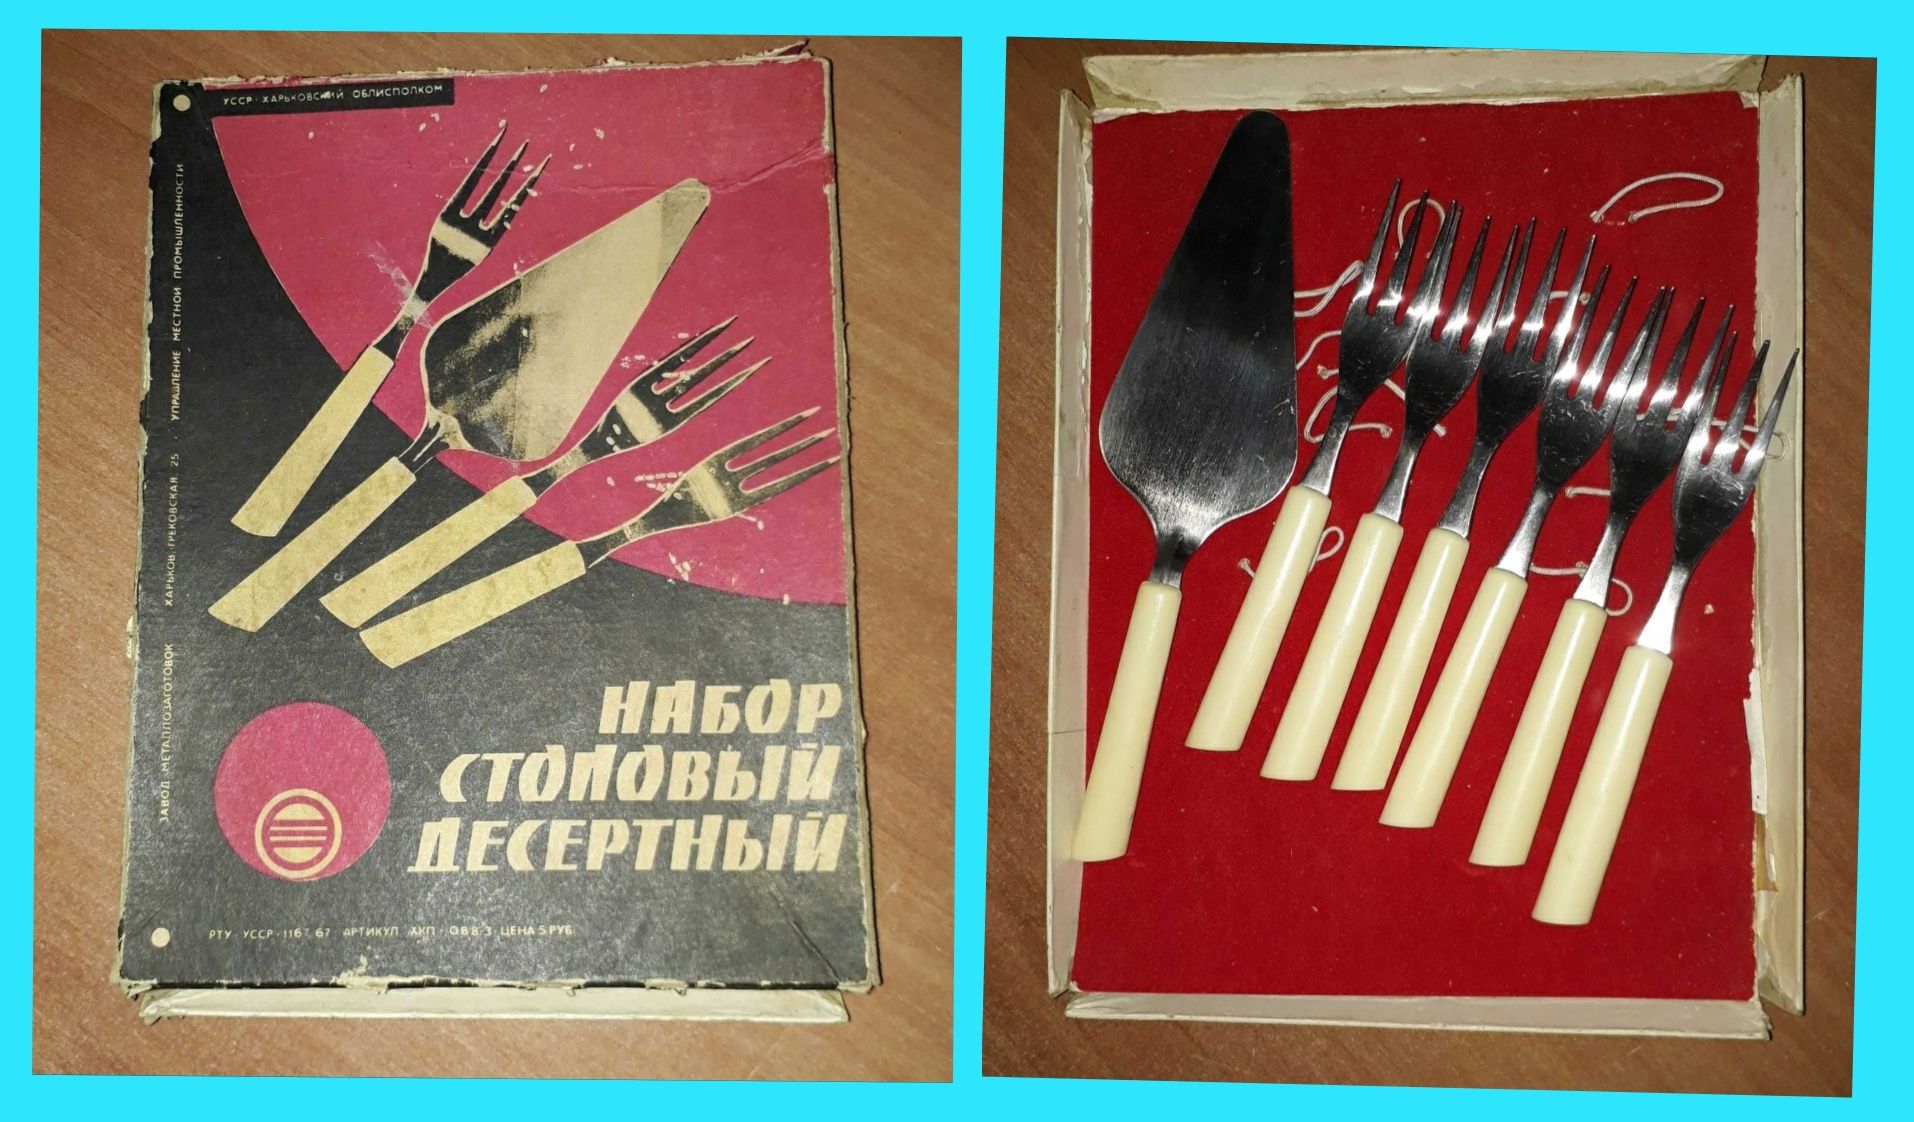 Набор столовый десертный СССР новый